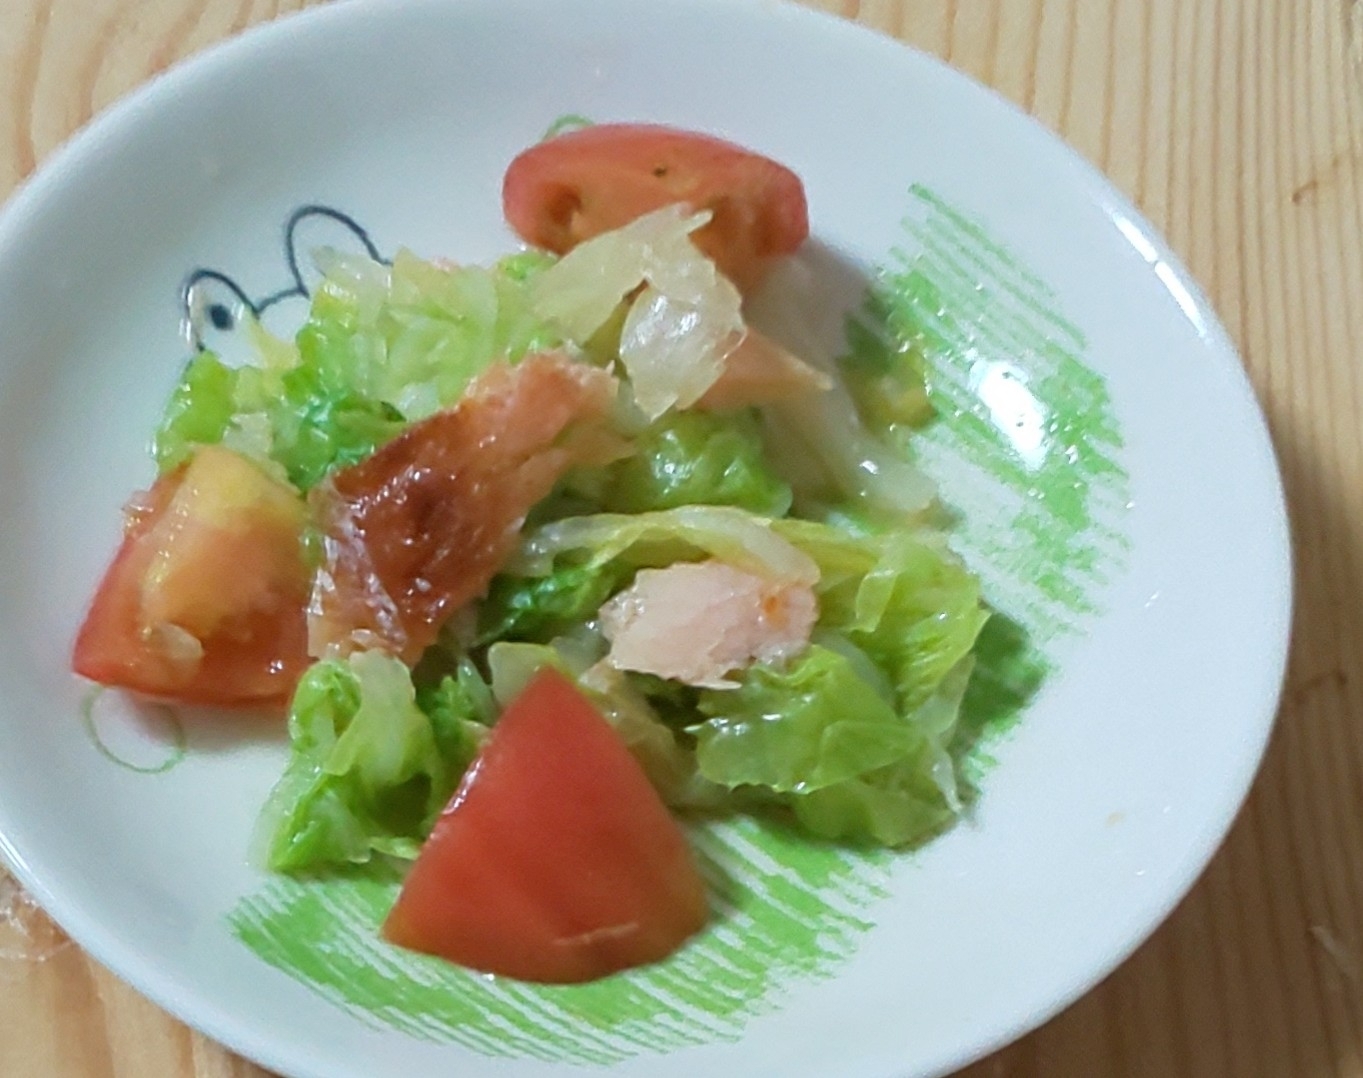 トマト☆焼き鮭☆白菜☆酢じょう油(#^.^#)